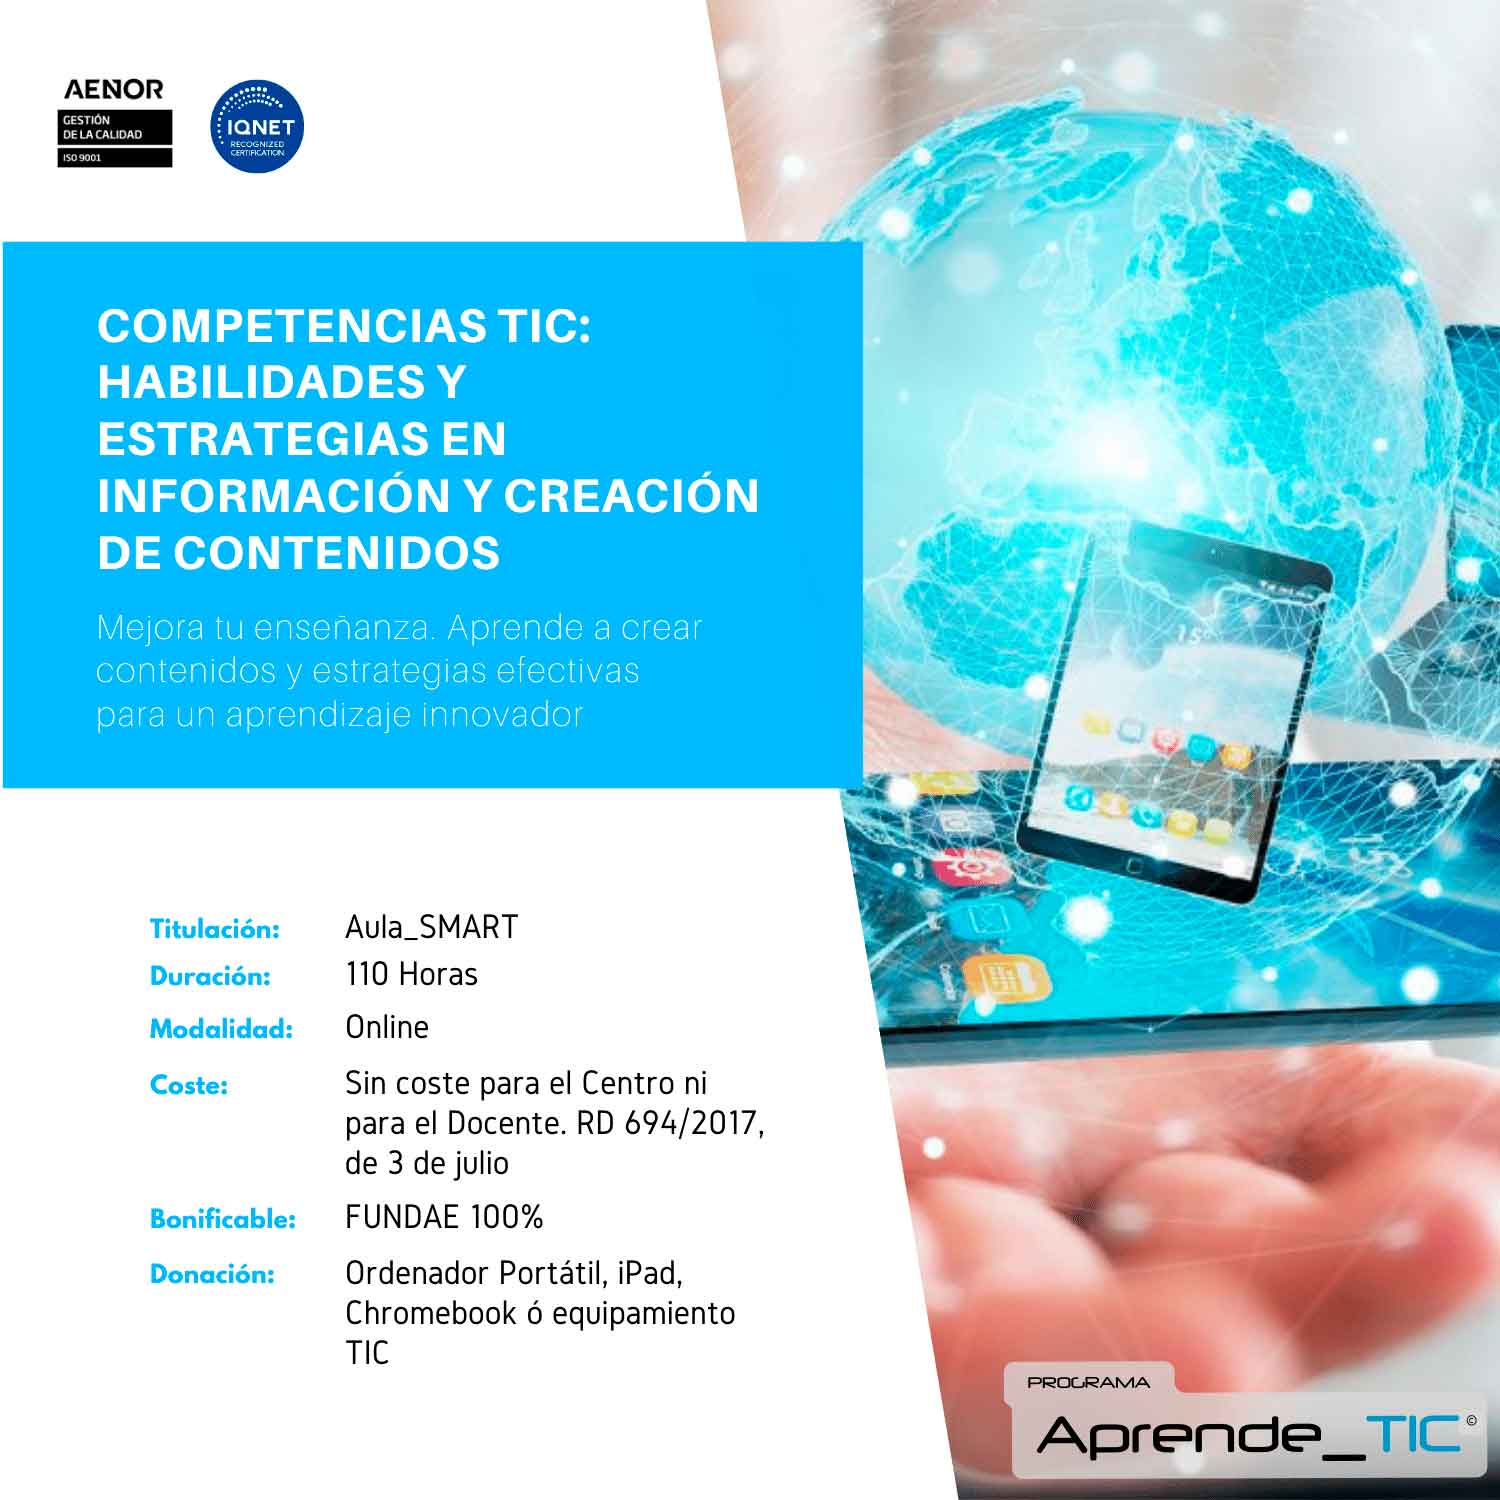 Competencias TIC: Habilidades y estrategias en información y creación de contenidos